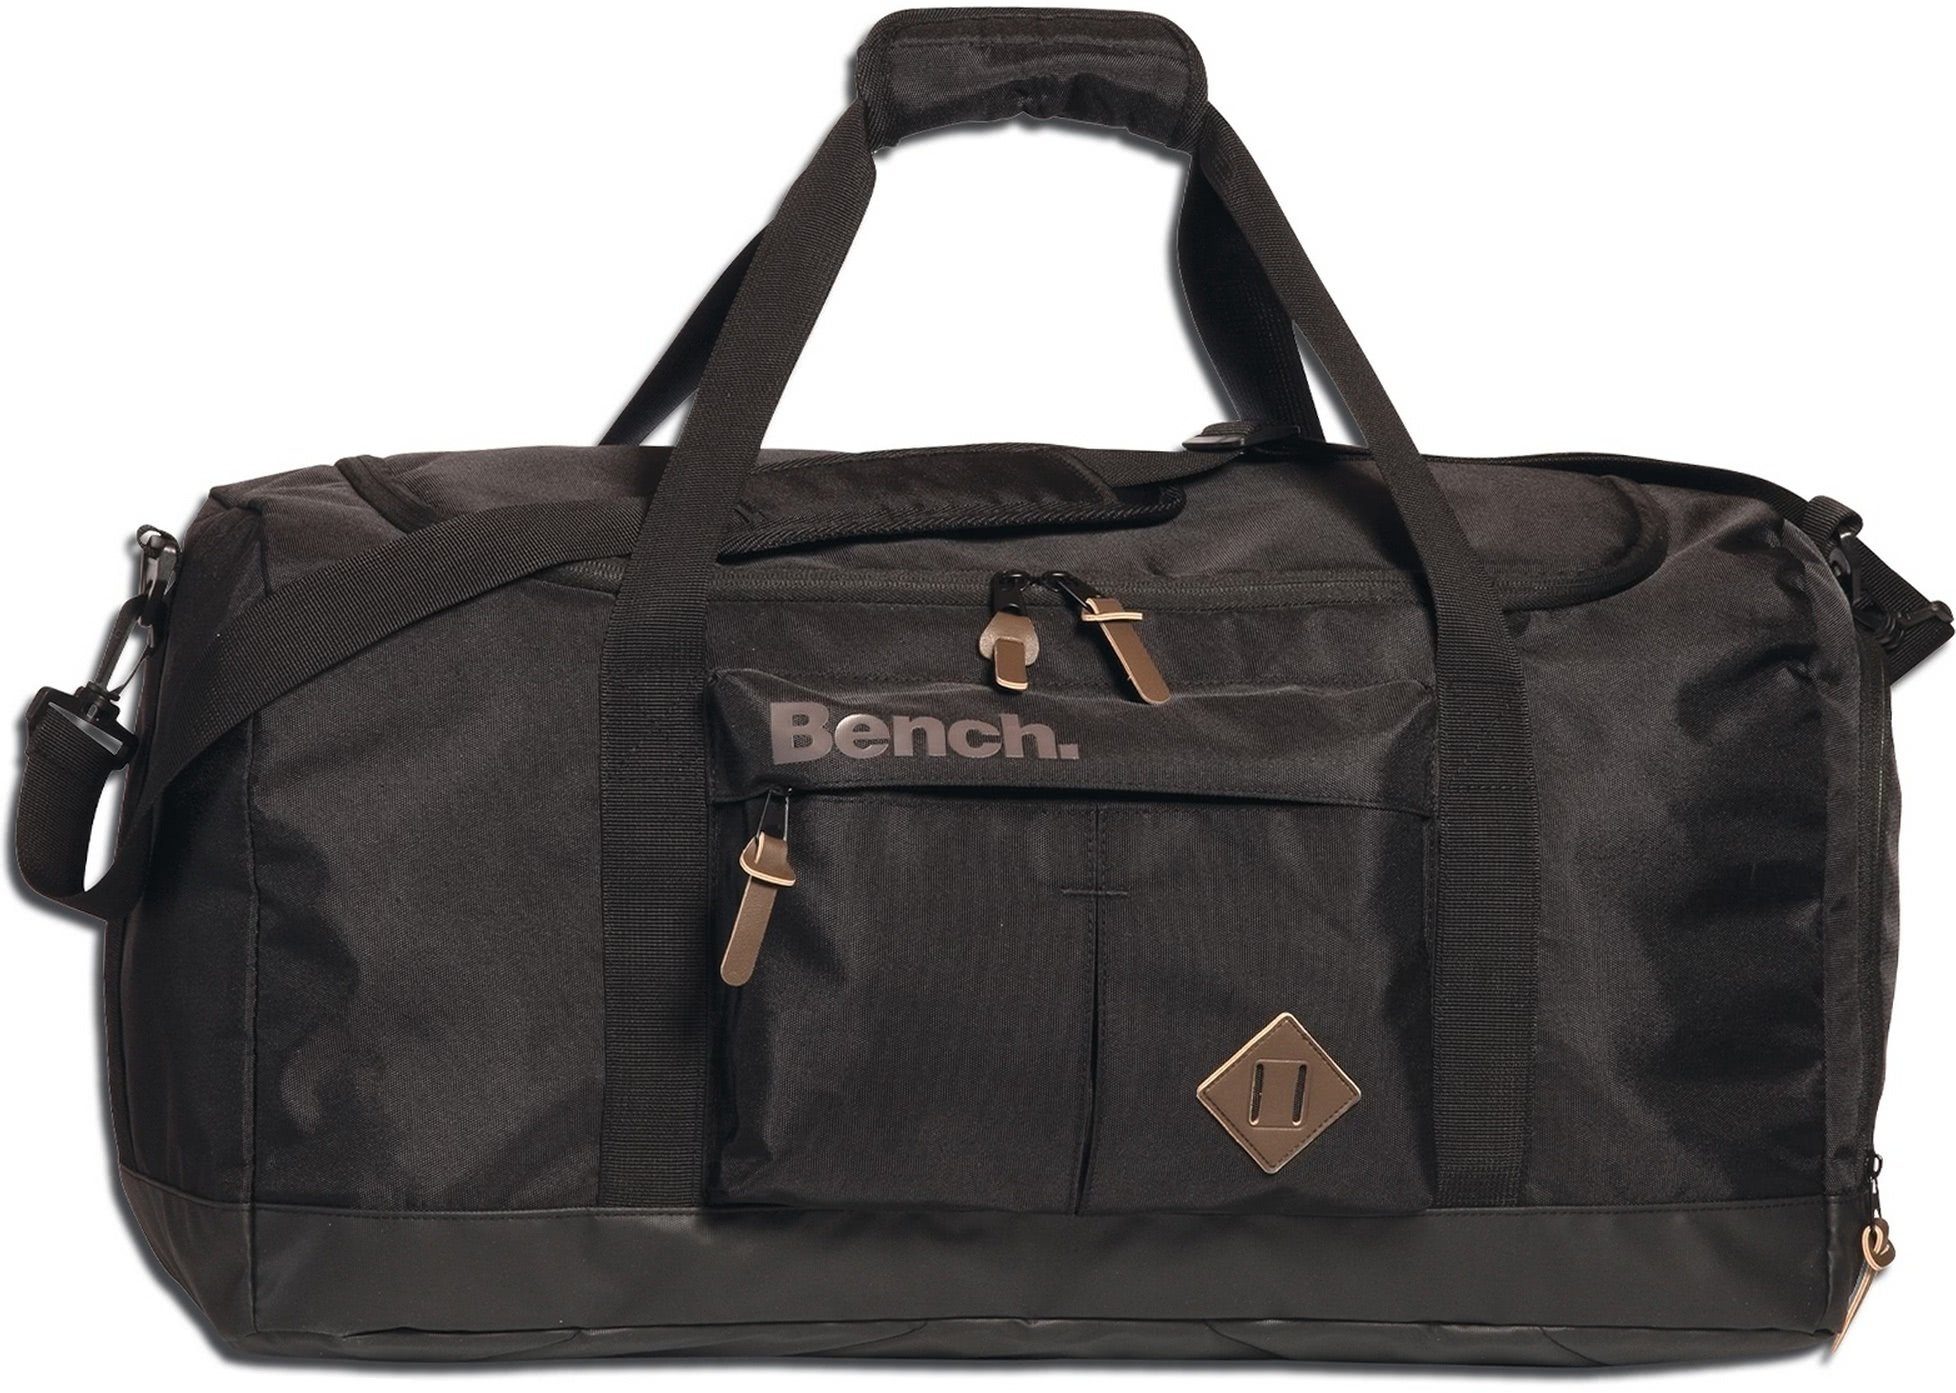 Bench. Reisetasche Bench Reisetasche Sporttasche Nylon (Sporttasche), Herren, Damen, Jugend Tasche strapazierfähiges Textilnylon schwarz